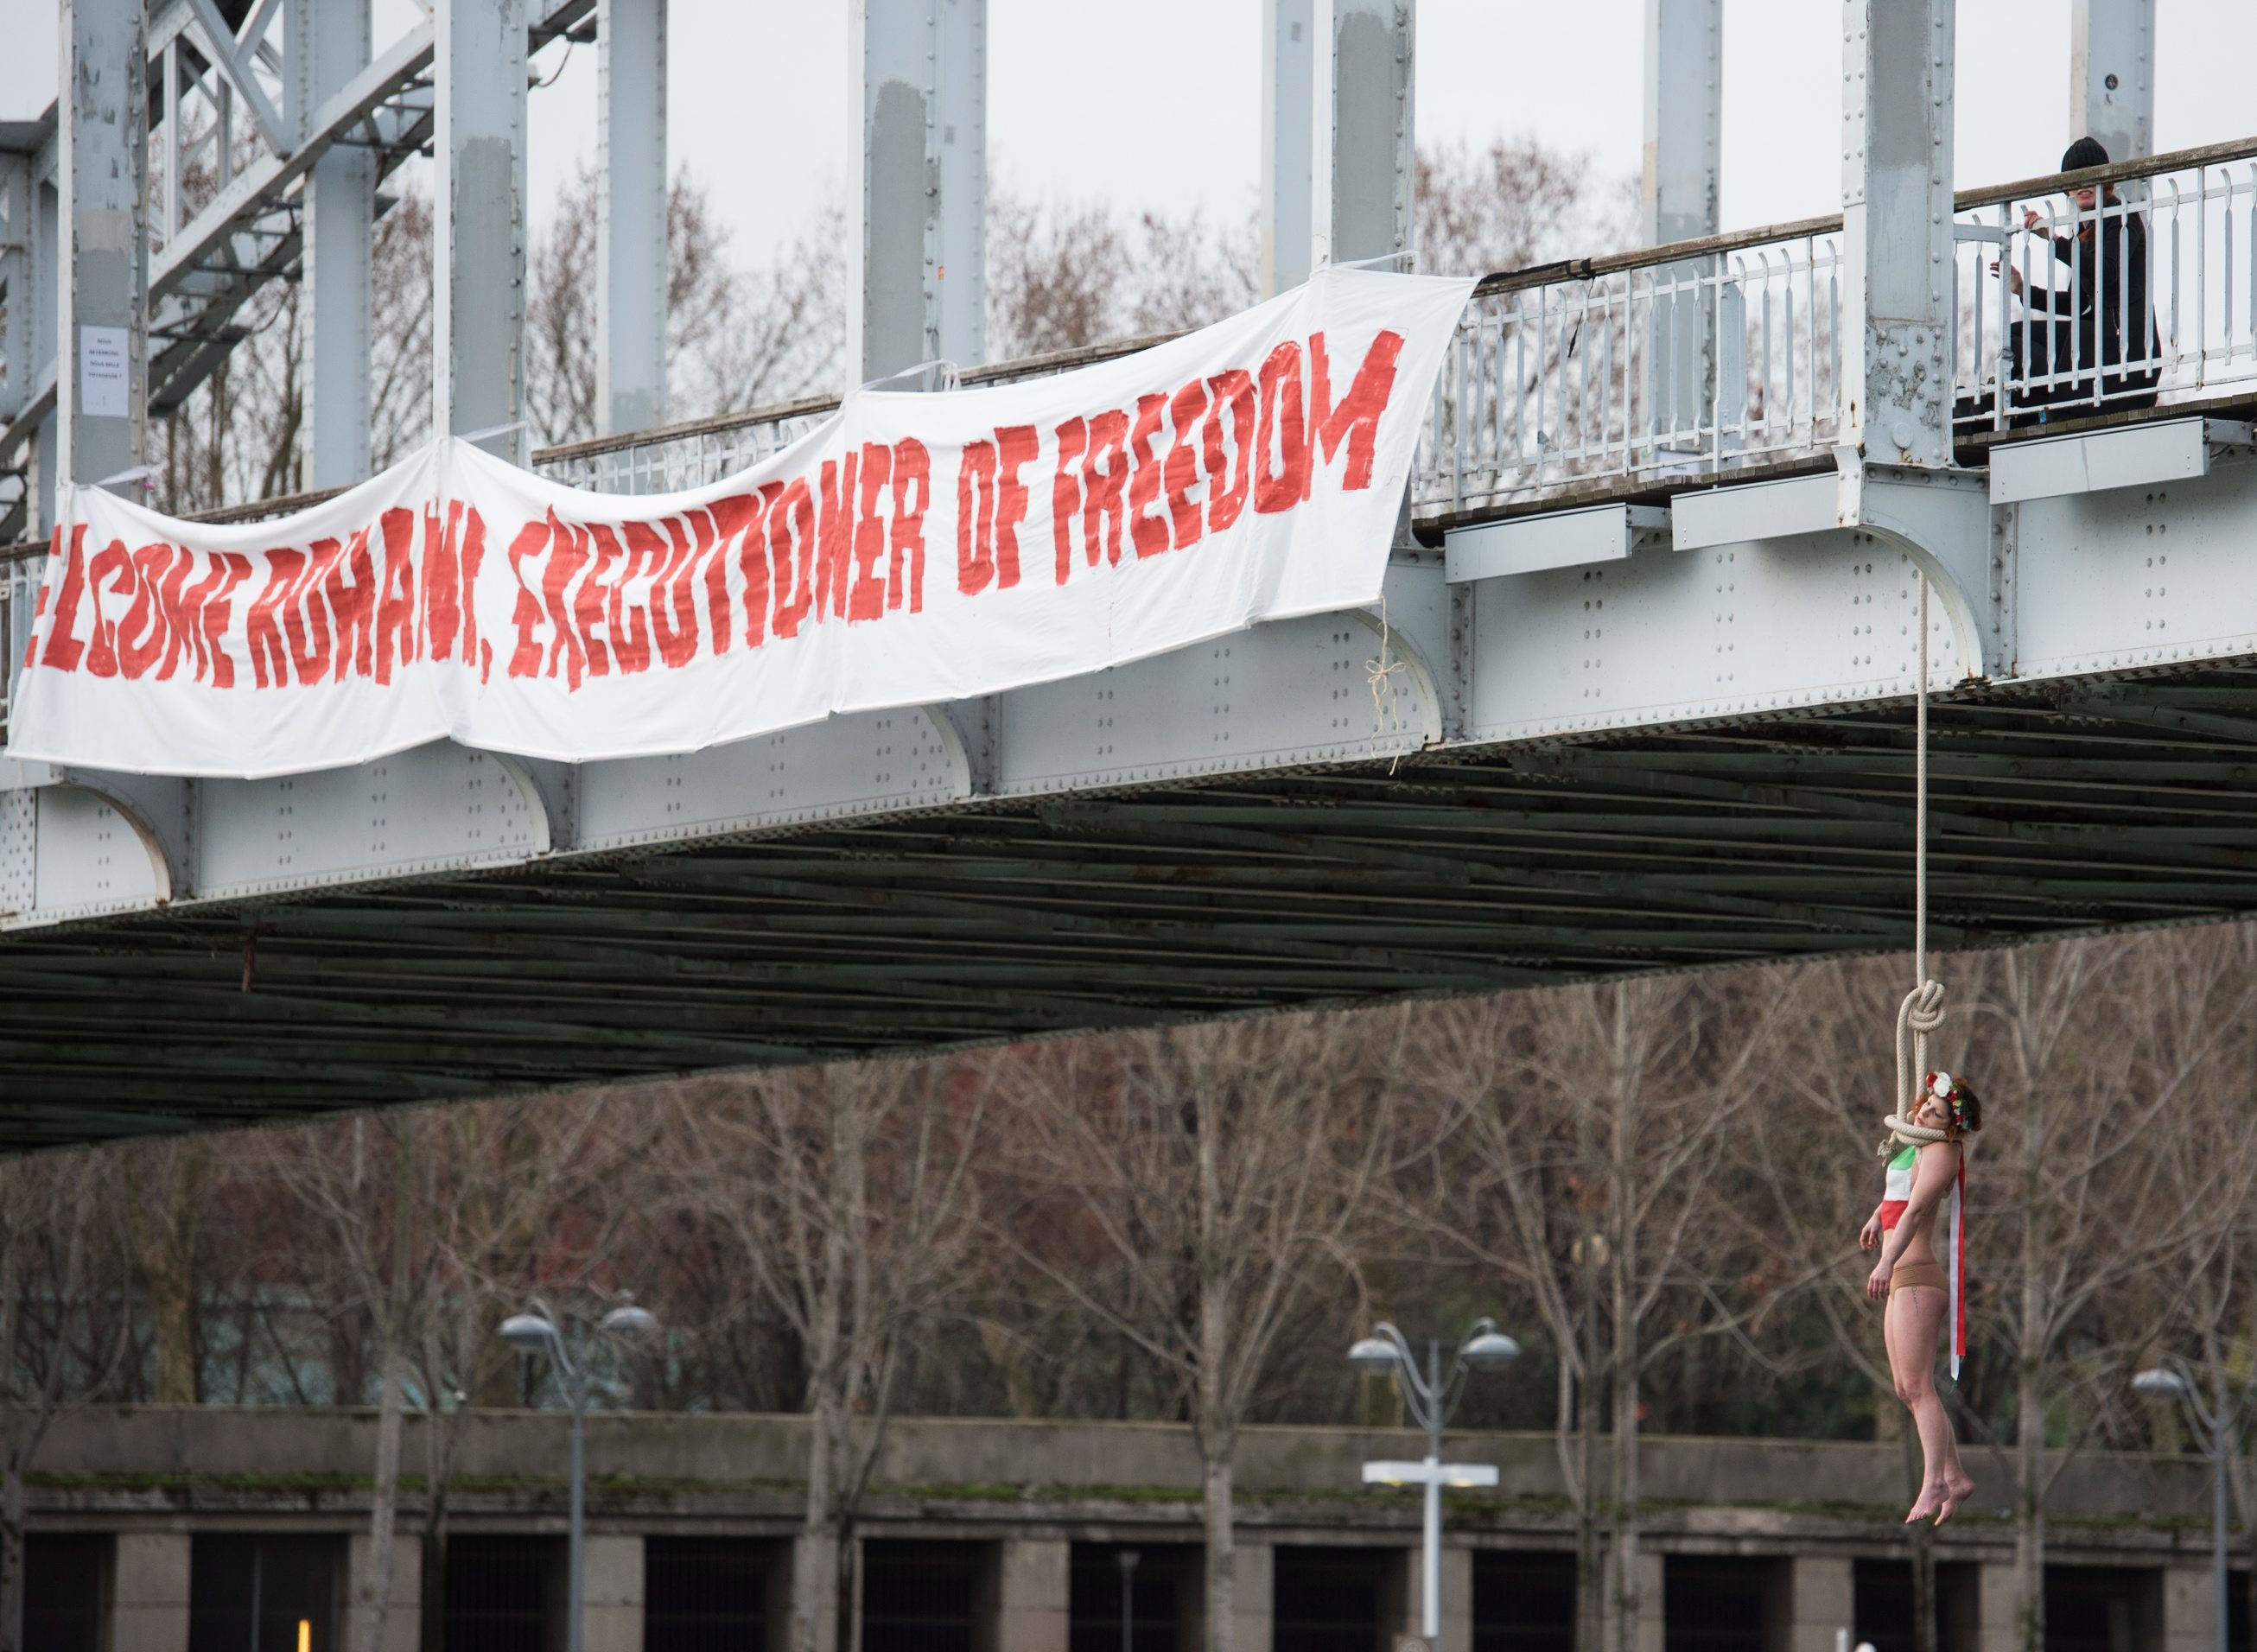 Párizs, 2016. január 28. Kötélen lóg egy hídról Sarah Constantin, a Femen nõjogi szervezet egyik aktivistája a Haszan Róháni iráni elnök kétéves elnöksége alatt elkövetett kivégzések elleni tiltakozásként Párizsban 2016. január 28-án, Róháninak a francia fõvárosban tett látogatásával egy idõben. A hídon látható transzparens jelentése: Isten hozott Róháni, a szabadság hóhéra!. (MTI/AP/Zacharie Scheurer)